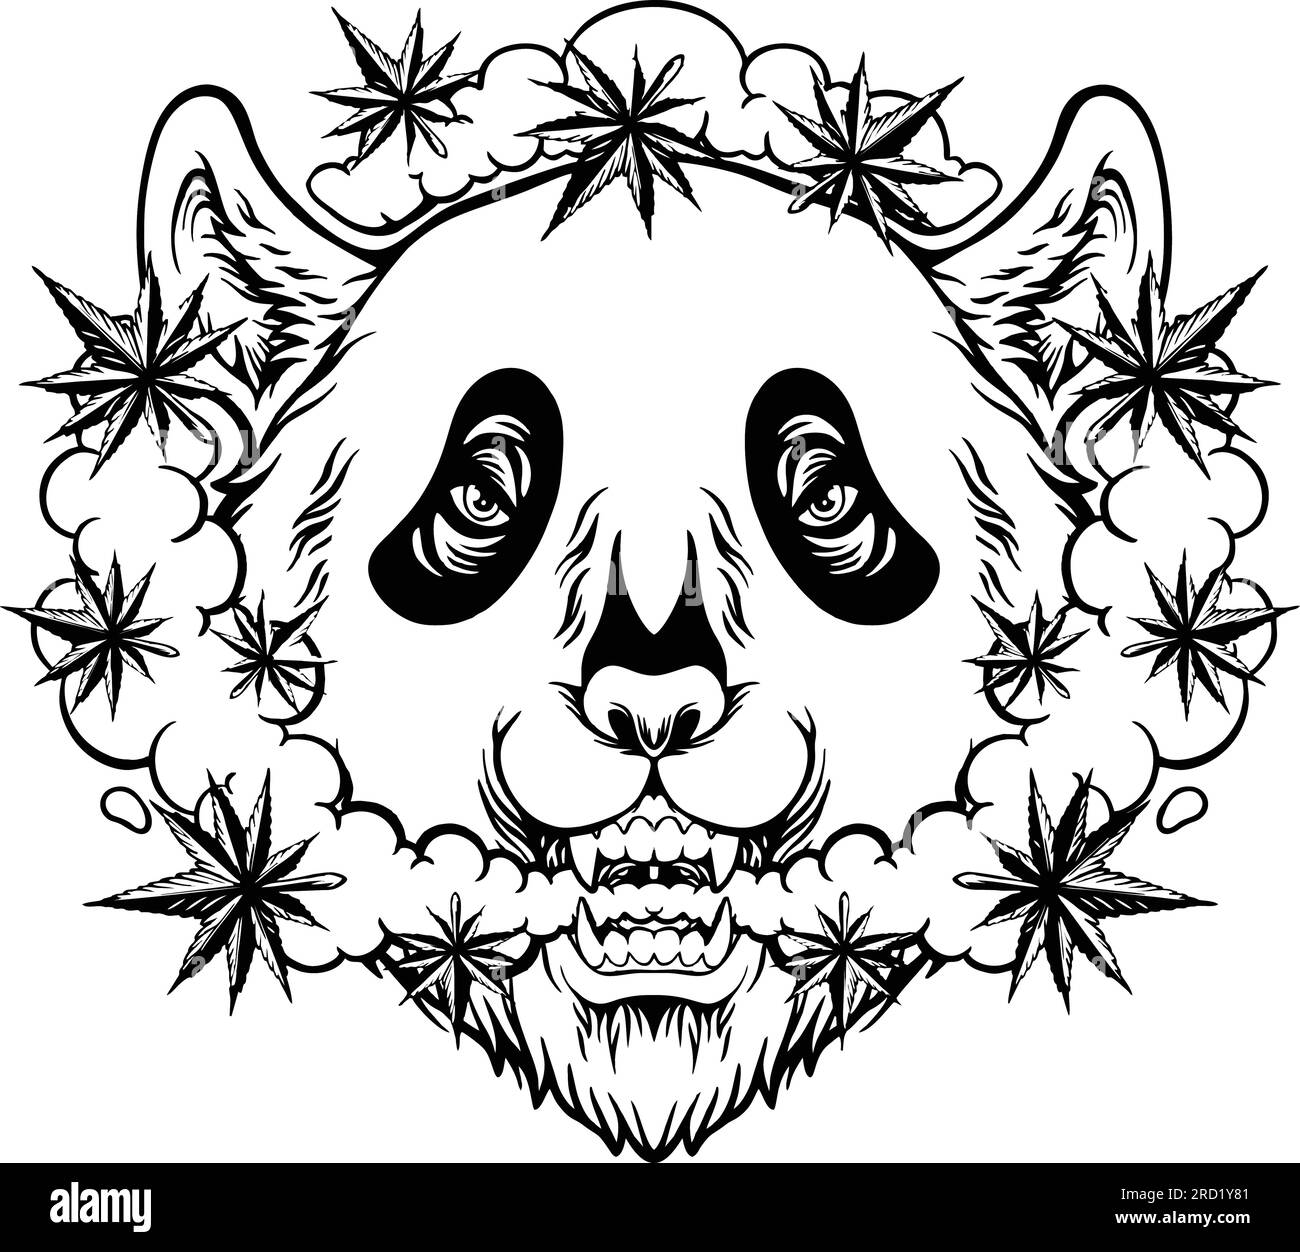 Panda noisette explorant les illustrations vectorielles monochromes Stoned Mind pour votre logo de travail, t-shirt de marchandises, autocollants et dessins d'étiquettes, affiche. Illustration de Vecteur